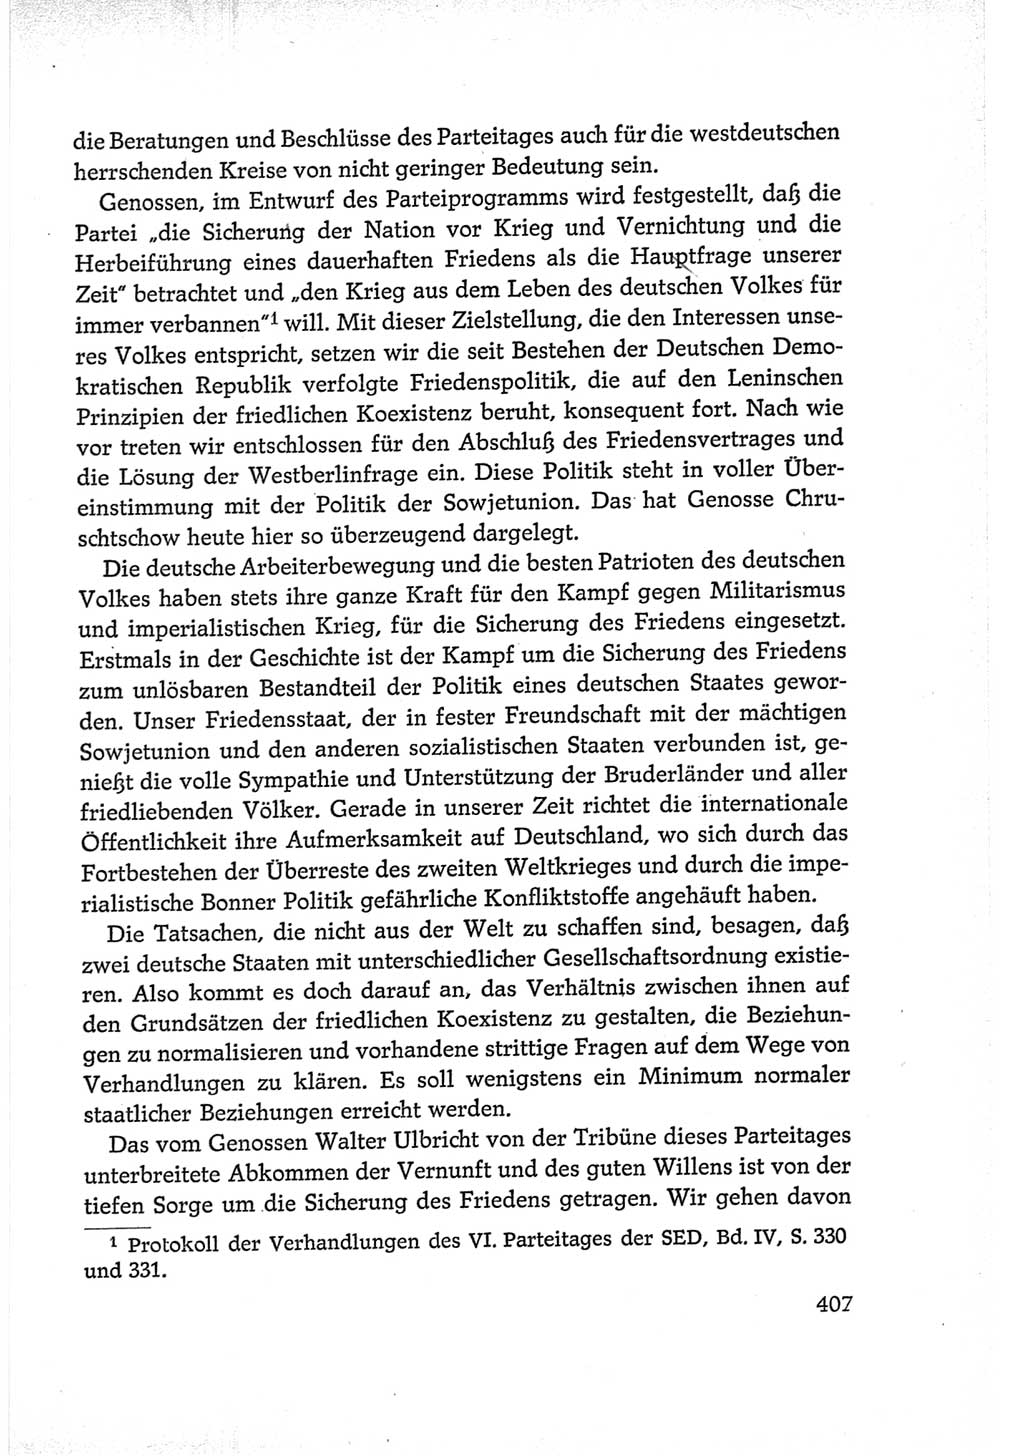 Protokoll der Verhandlungen des Ⅵ. Parteitages der Sozialistischen Einheitspartei Deutschlands (SED) [Deutsche Demokratische Republik (DDR)] 1963, Band Ⅰ, Seite 407 (Prot. Verh. Ⅵ. PT SED DDR 1963, Bd. Ⅰ, S. 407)